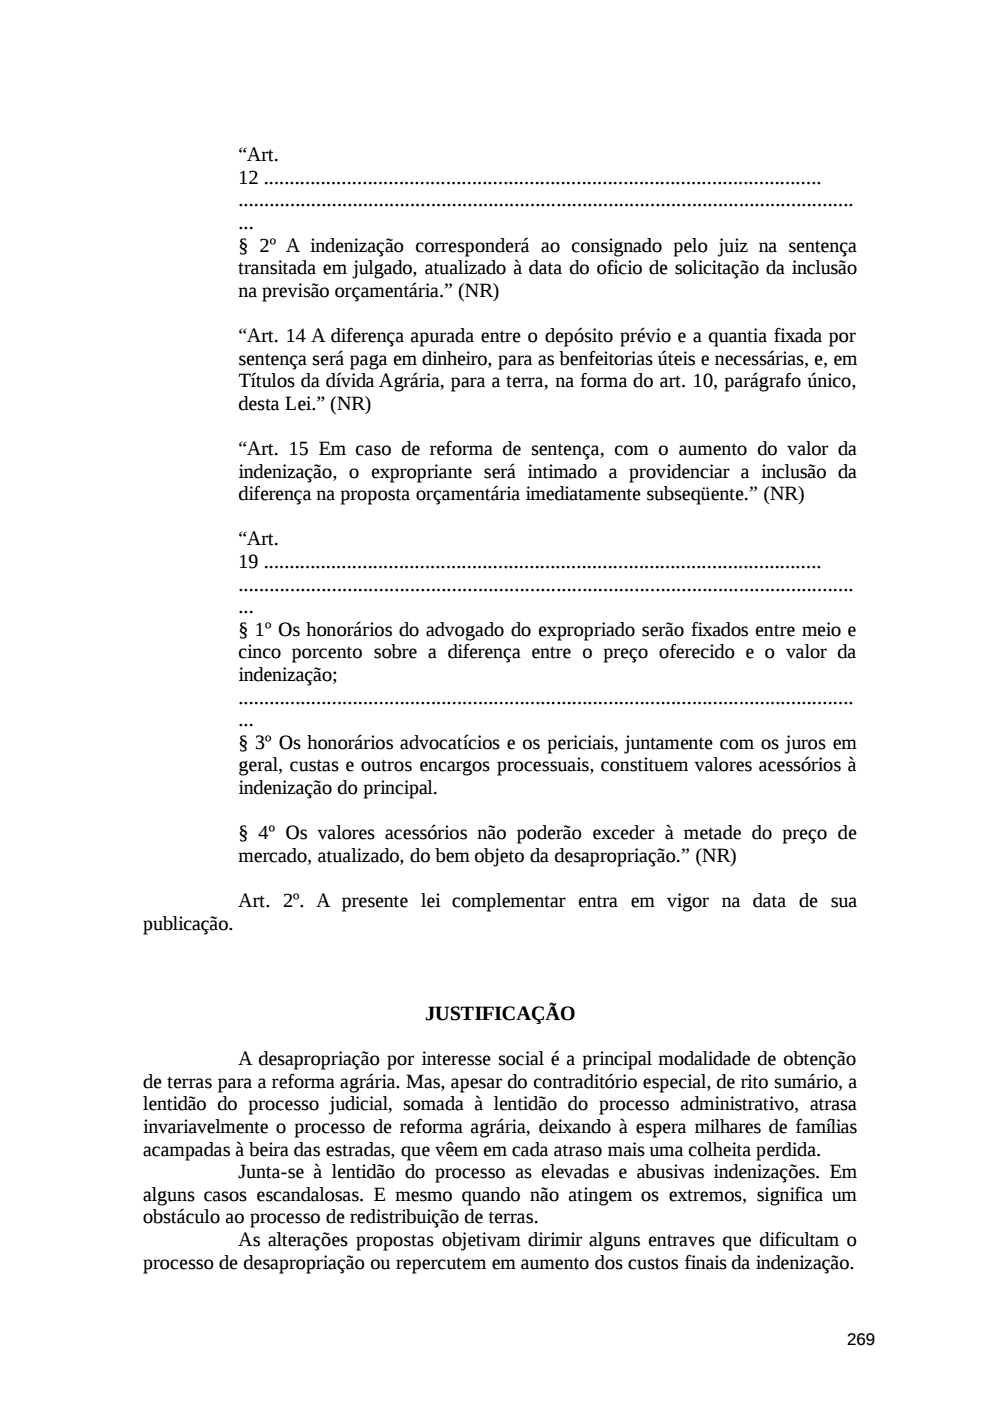 Page 269 from Relatório final da comissão